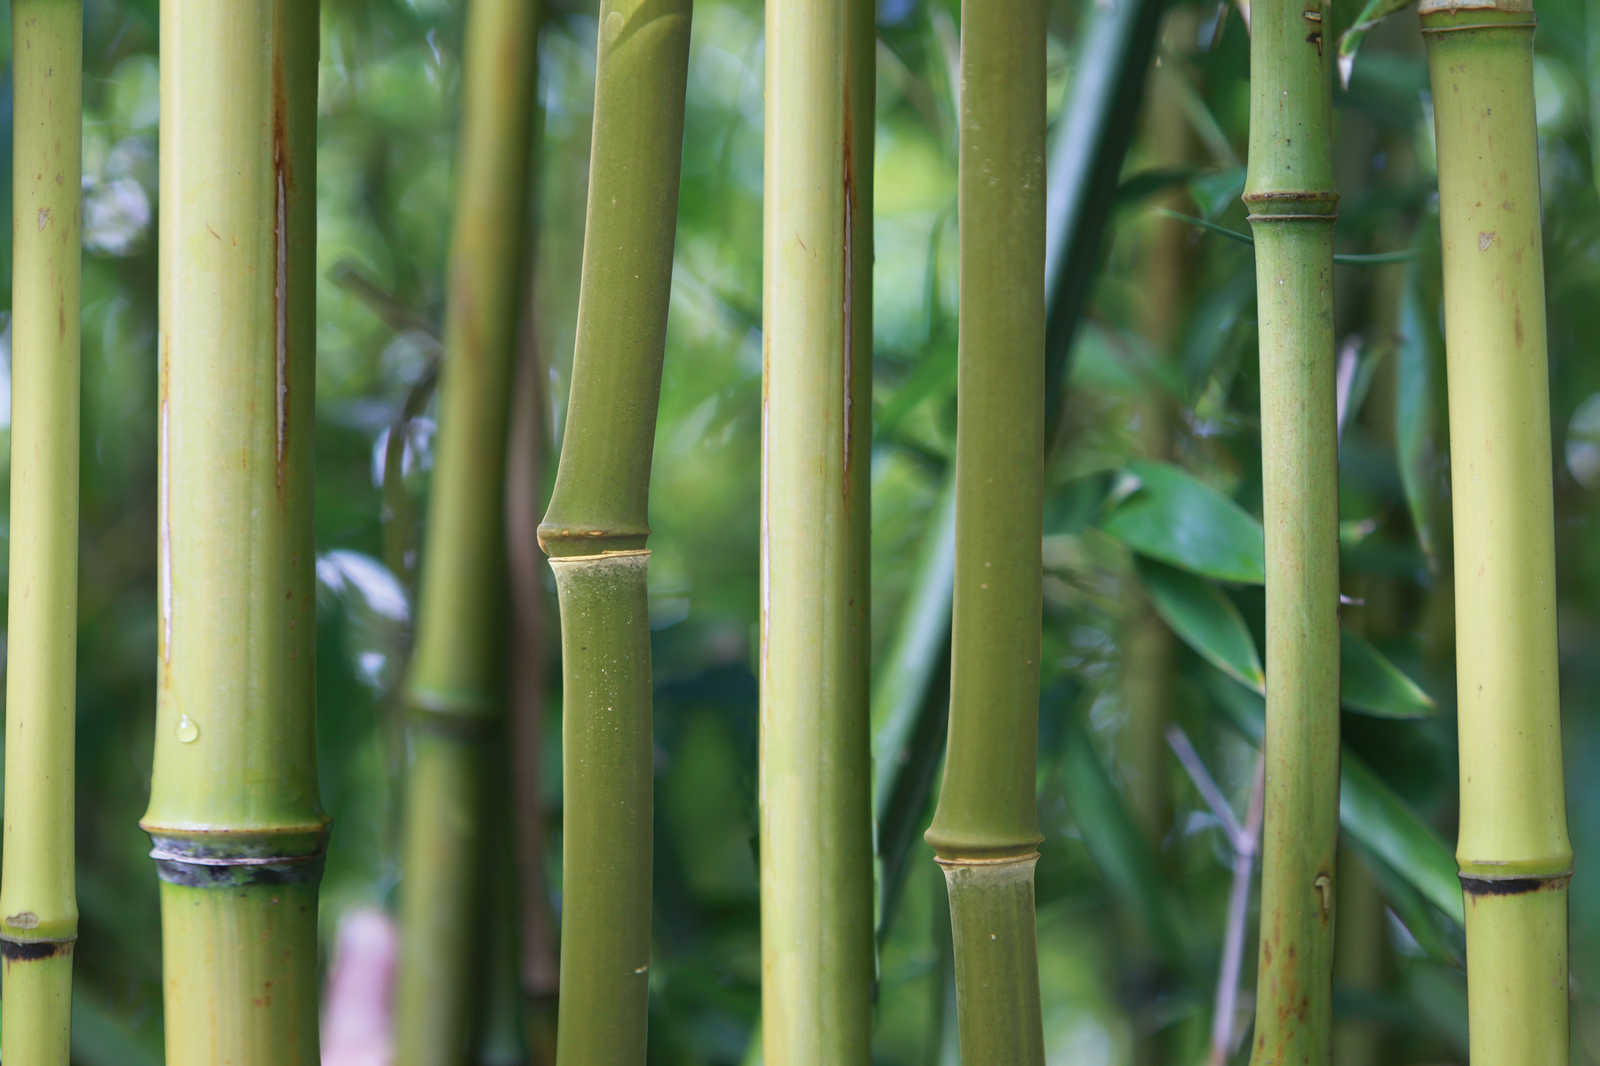             Cuadro en lienzo Bambú Bosque de bambú con vista detallada - 1,20 m x 0,80 m
        